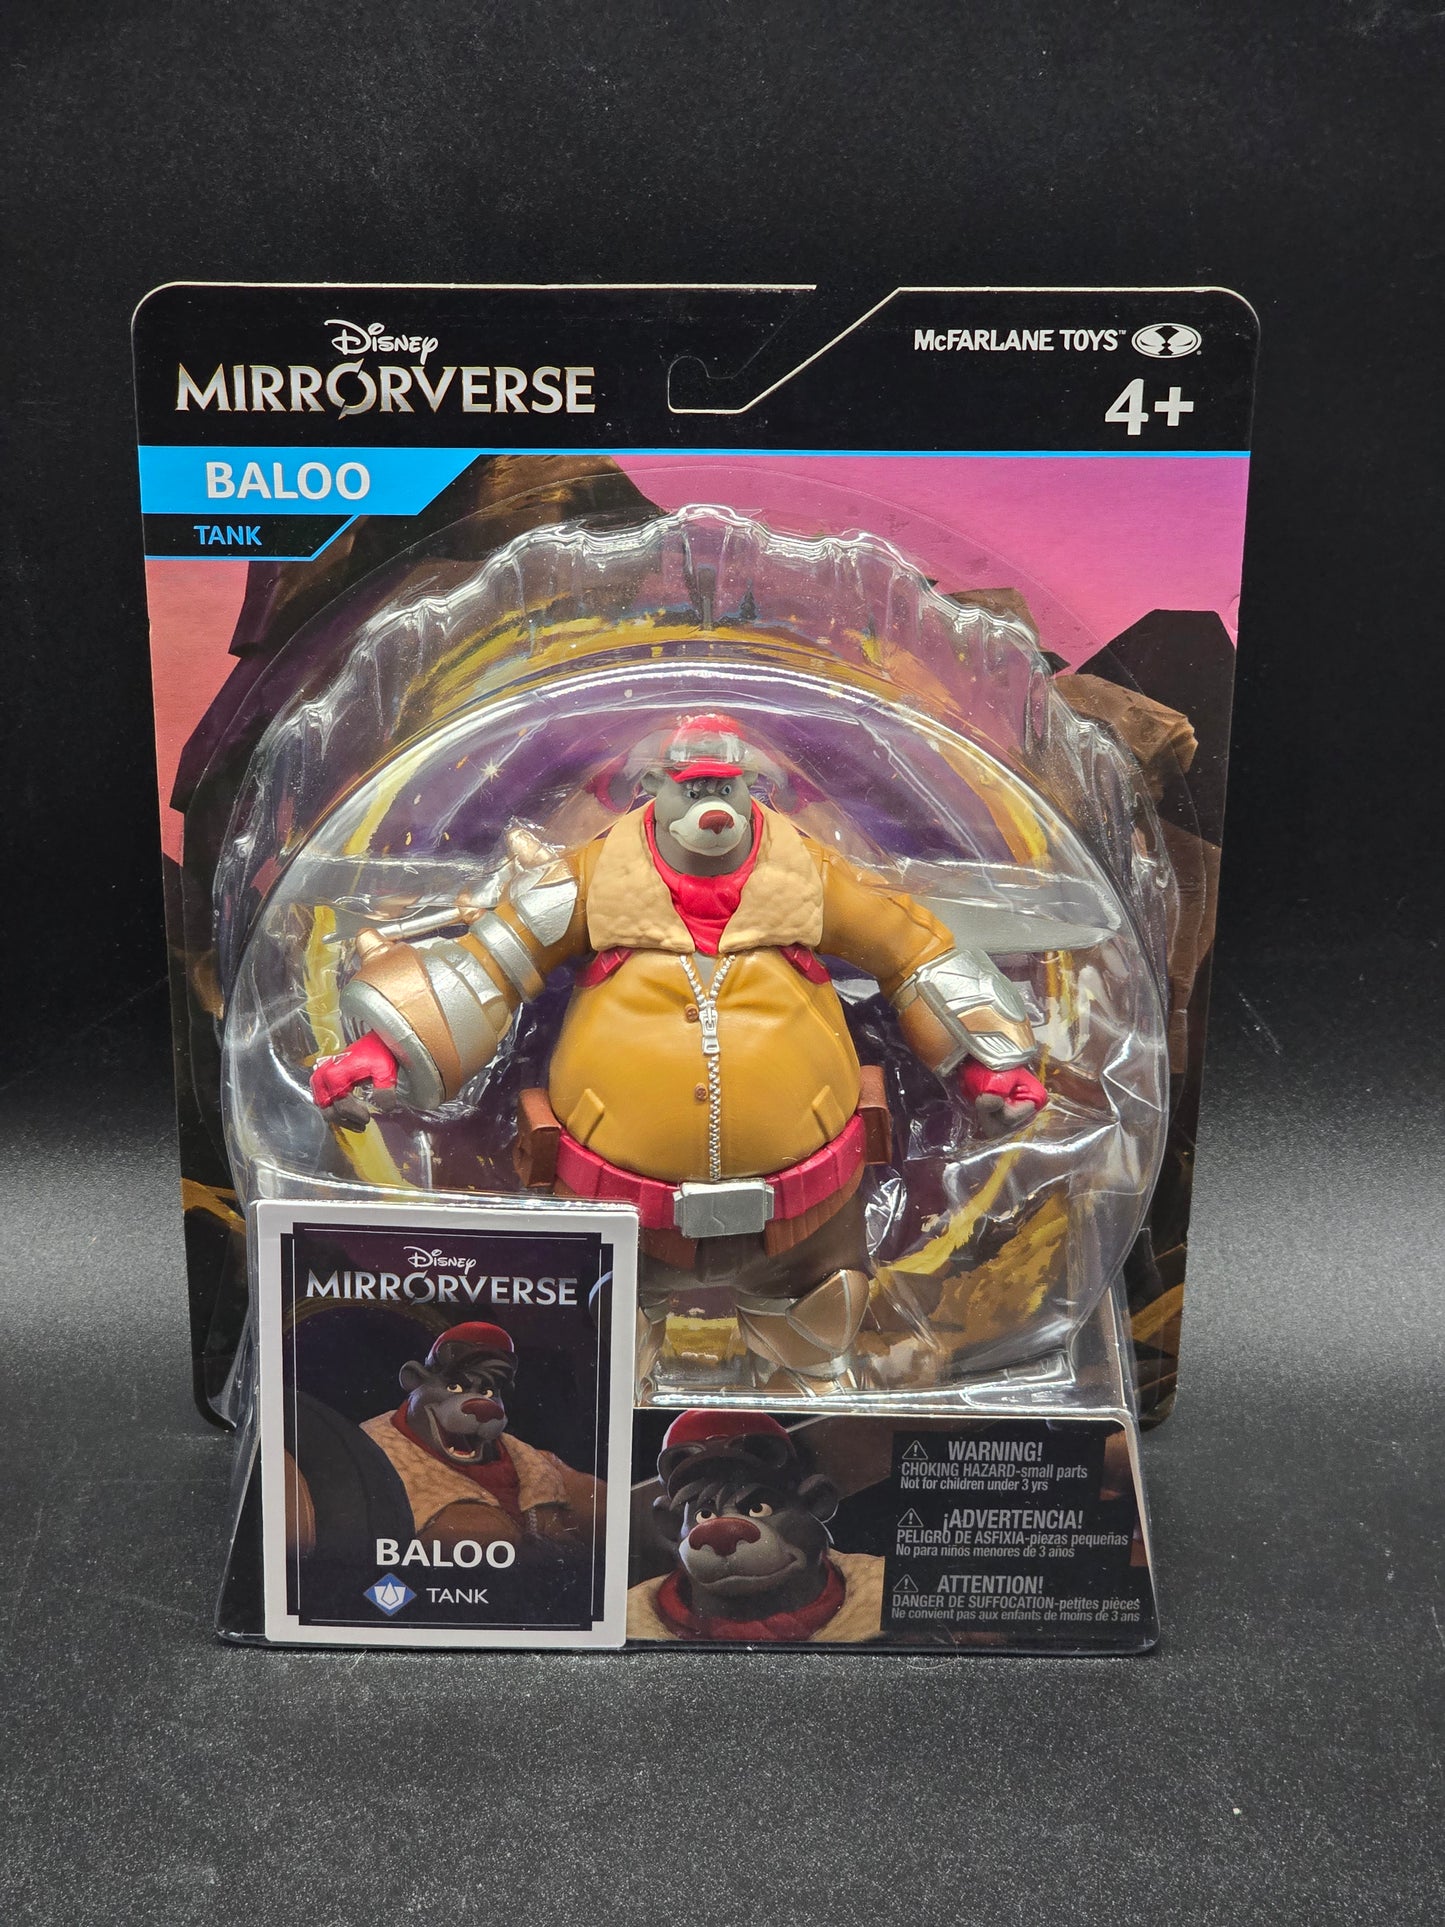 Baloo (tank) Disney Mirrorverse McFarlane